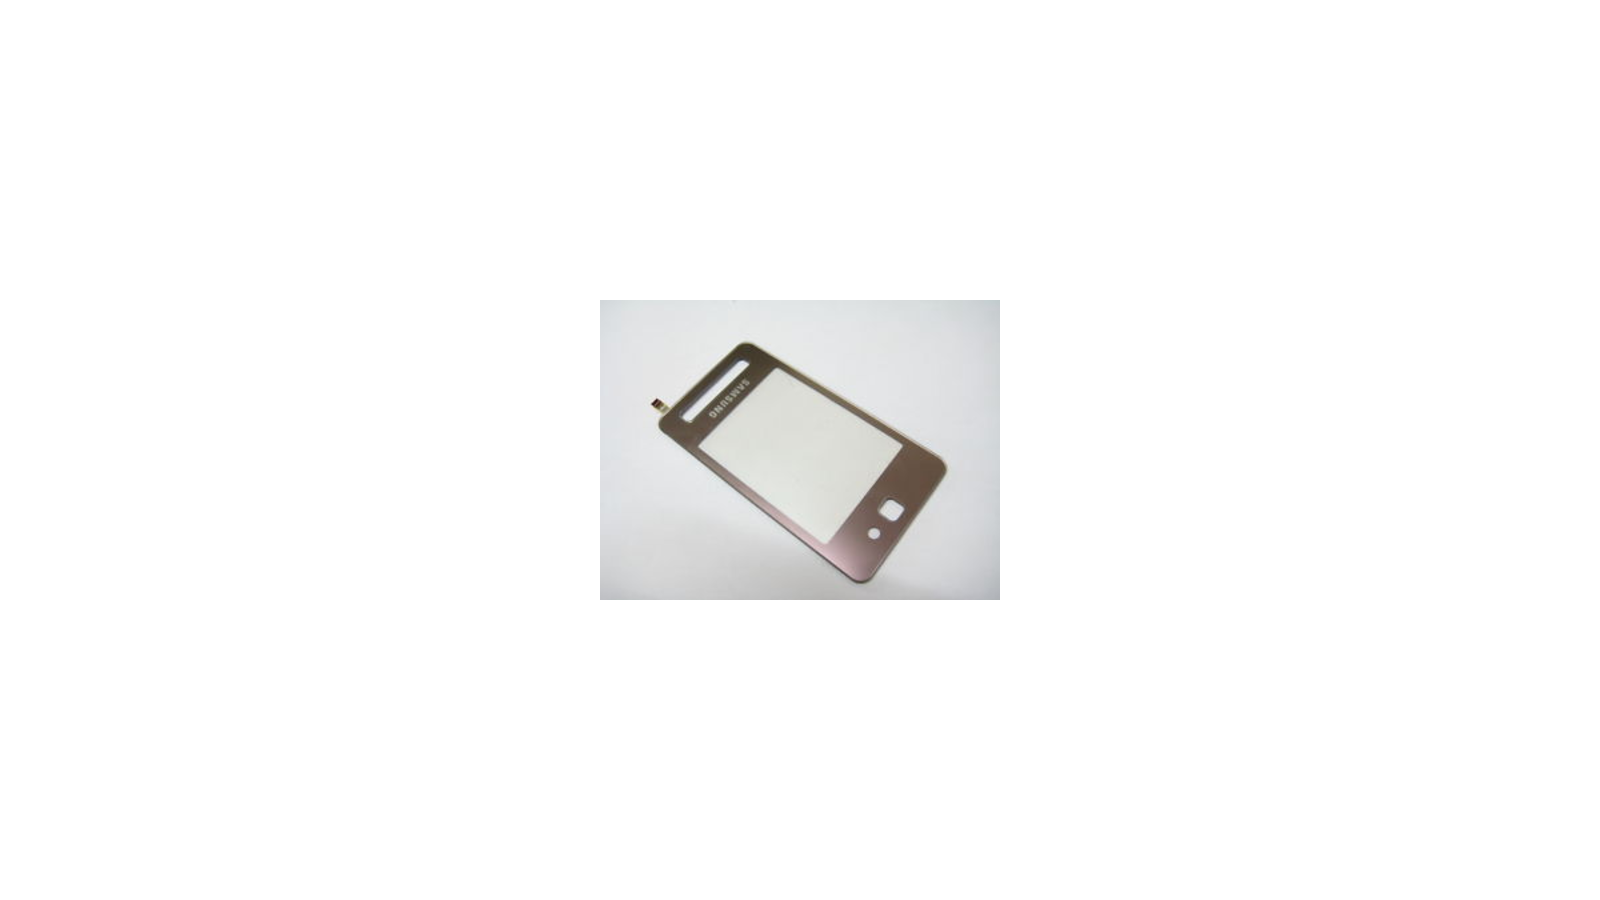 Touch screen e vetro Samsung SGH F480 rosa